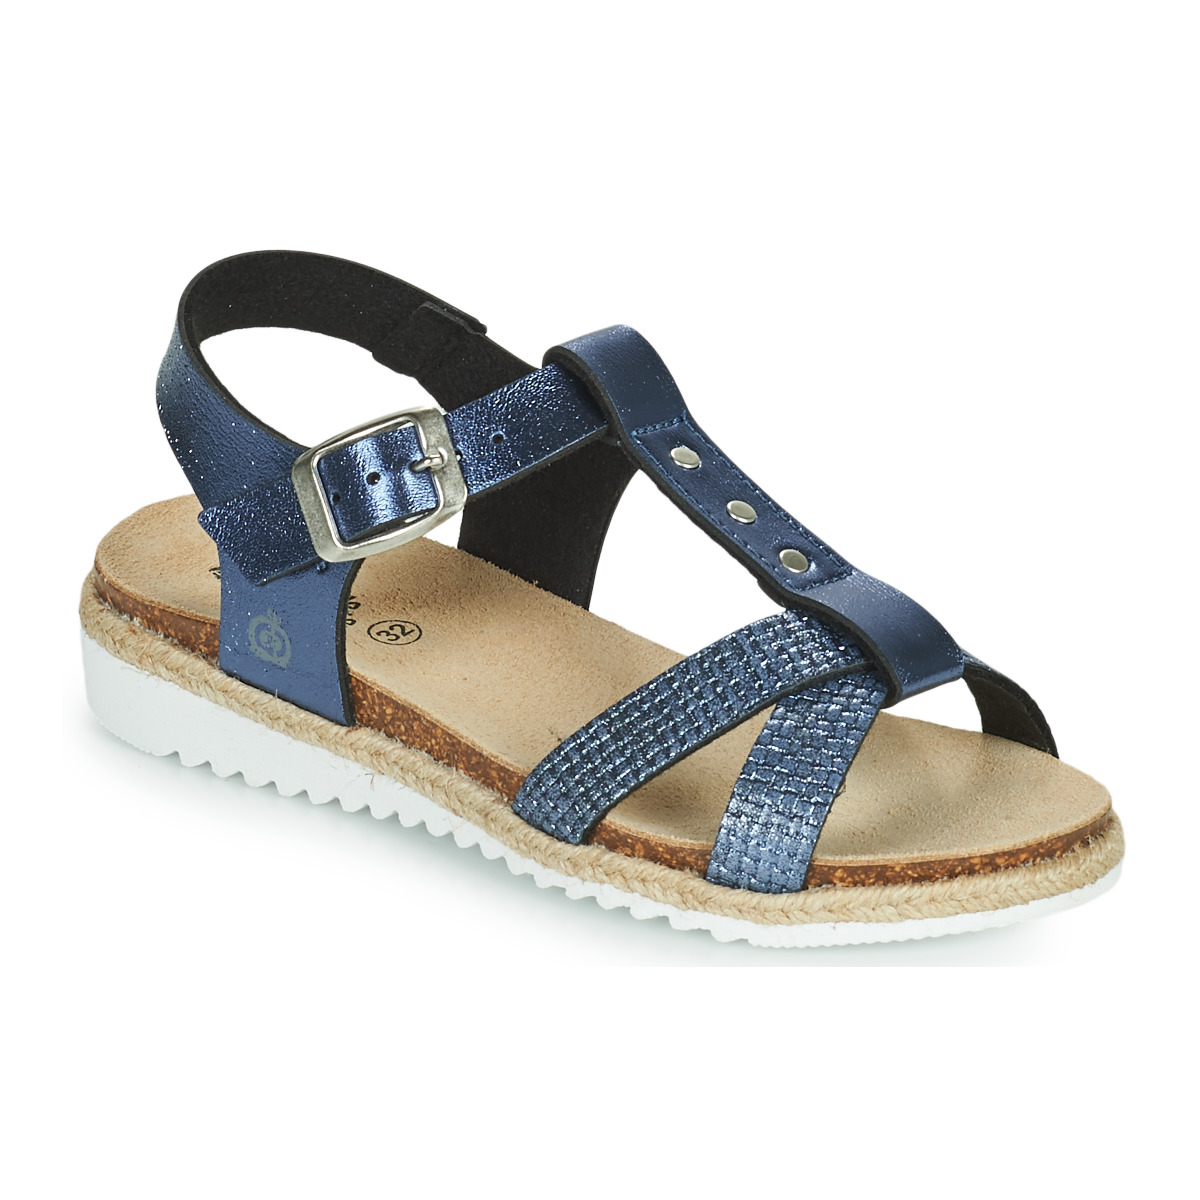 Schuhe Mädchen Sandalen / Sandaletten Citrouille et Compagnie OMALA Blau